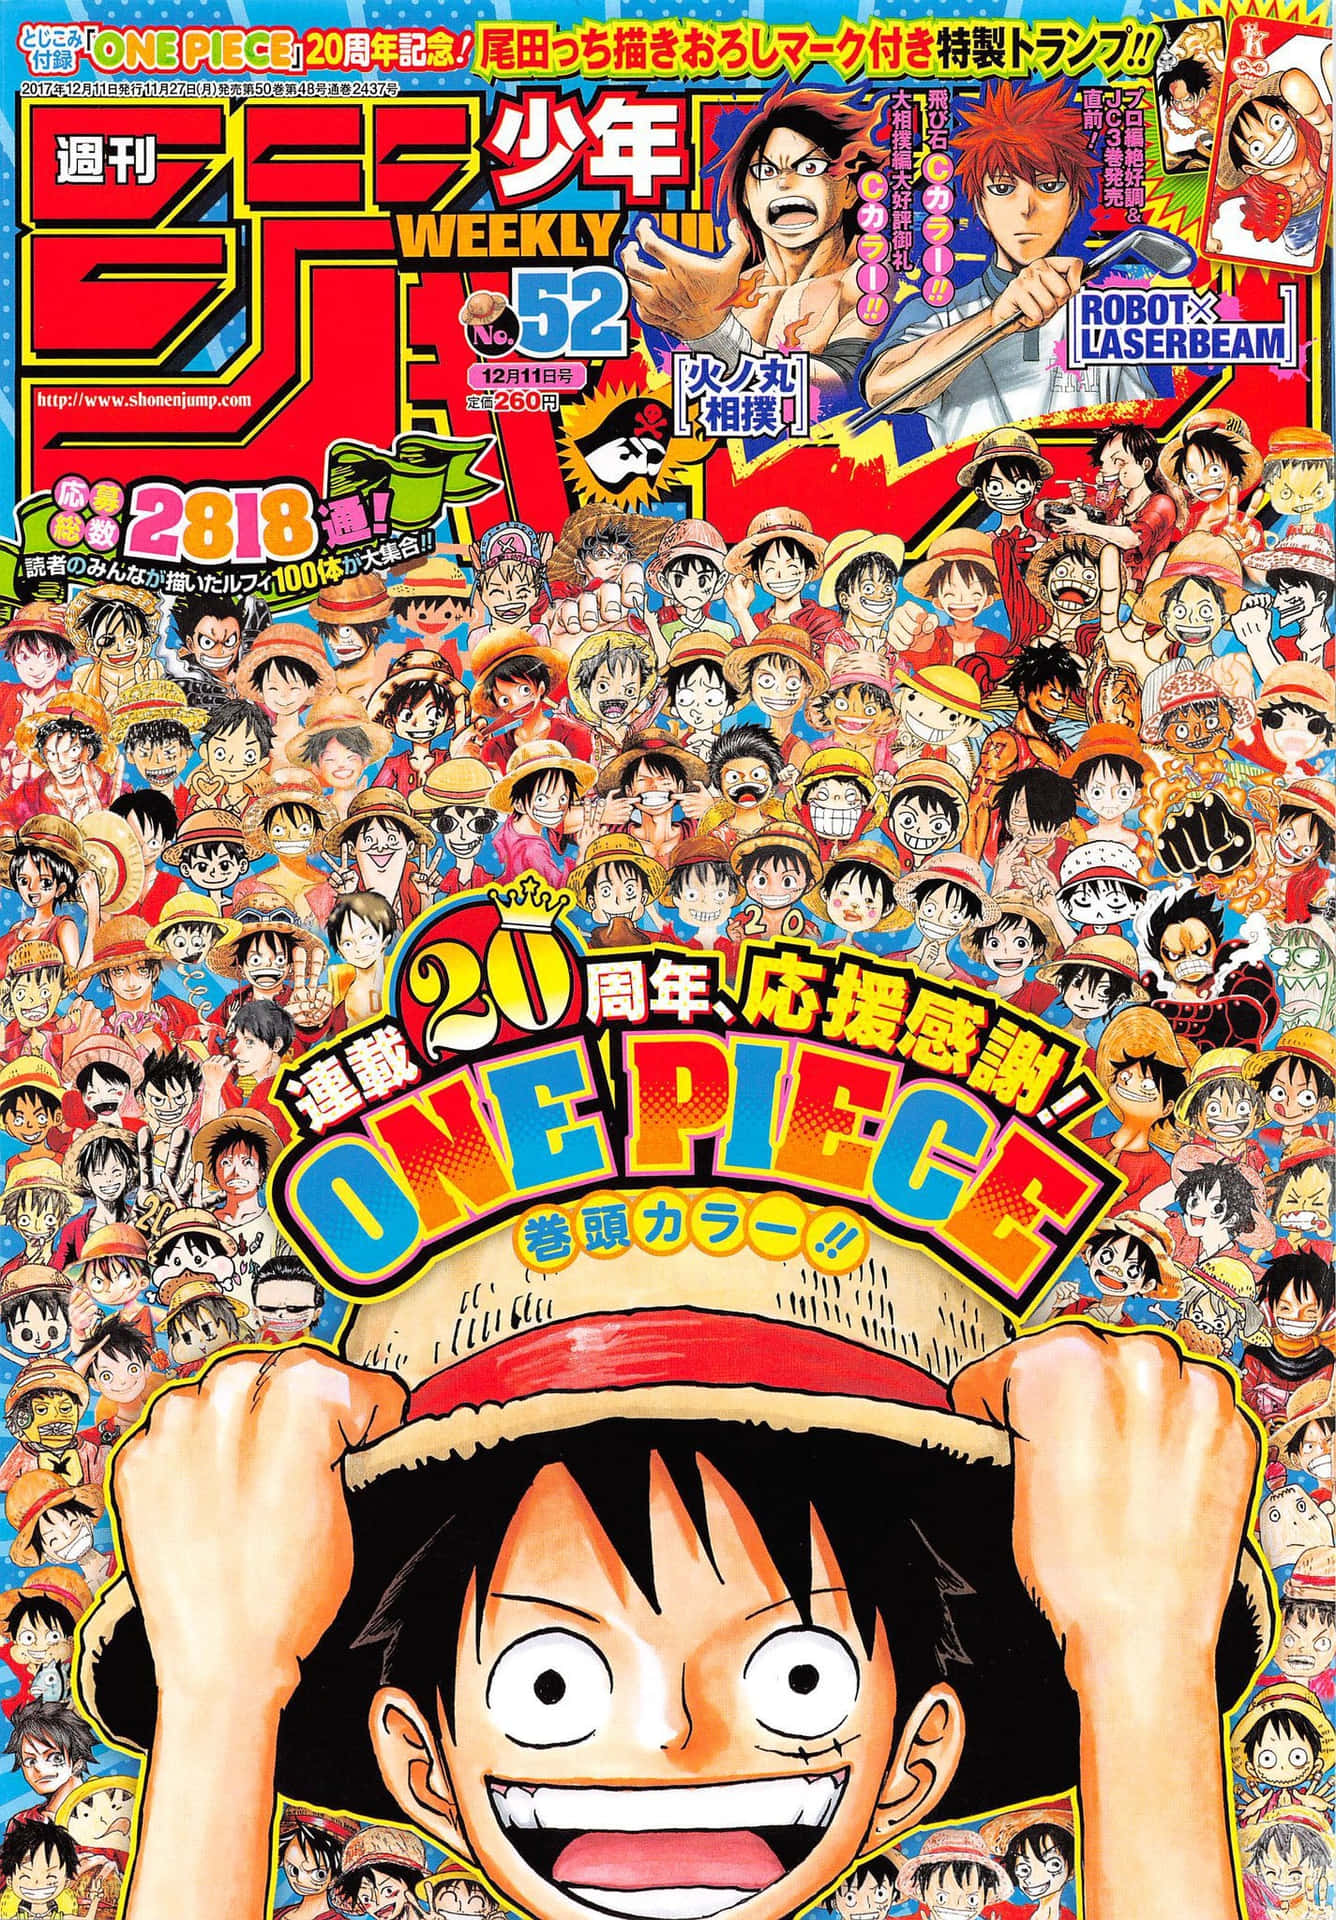 Weekly shonen jump. Weekly Shonen Jump обложки. Герои Shonen Jump. Weekly Shonen Jump журнал. One piece Shonen Jump.